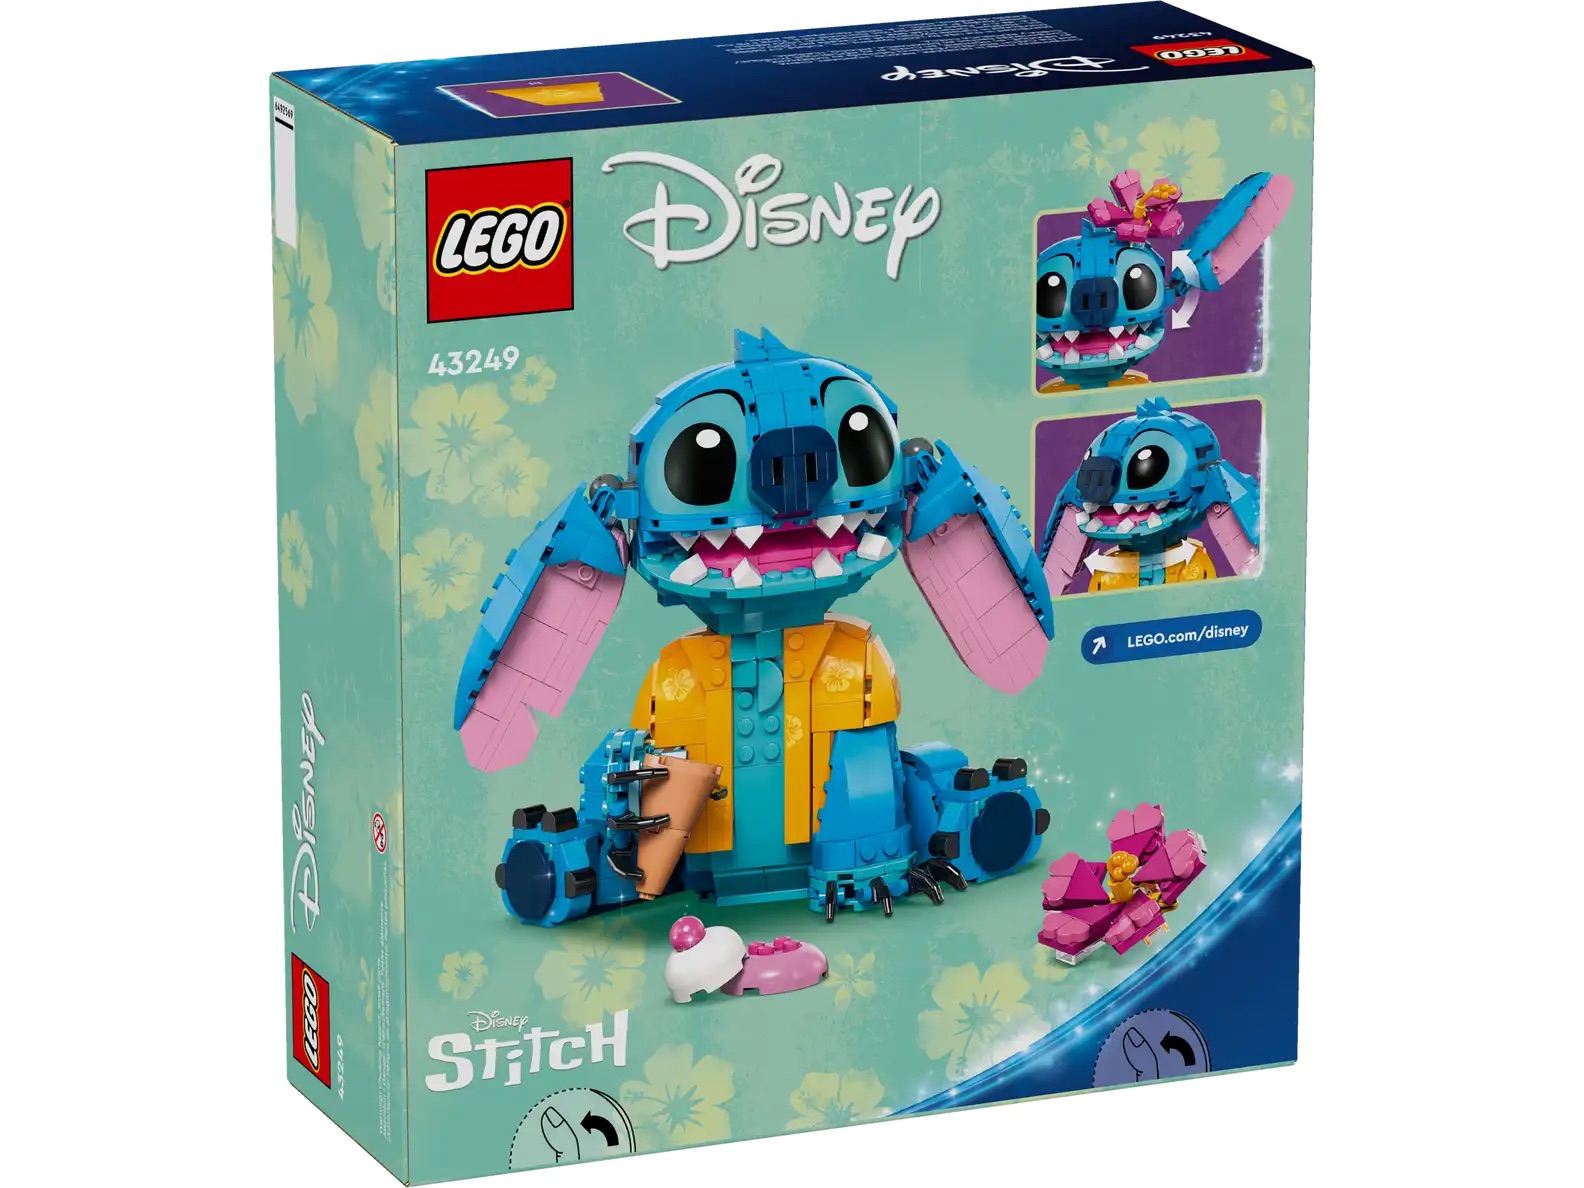 Disney Lego Stitch